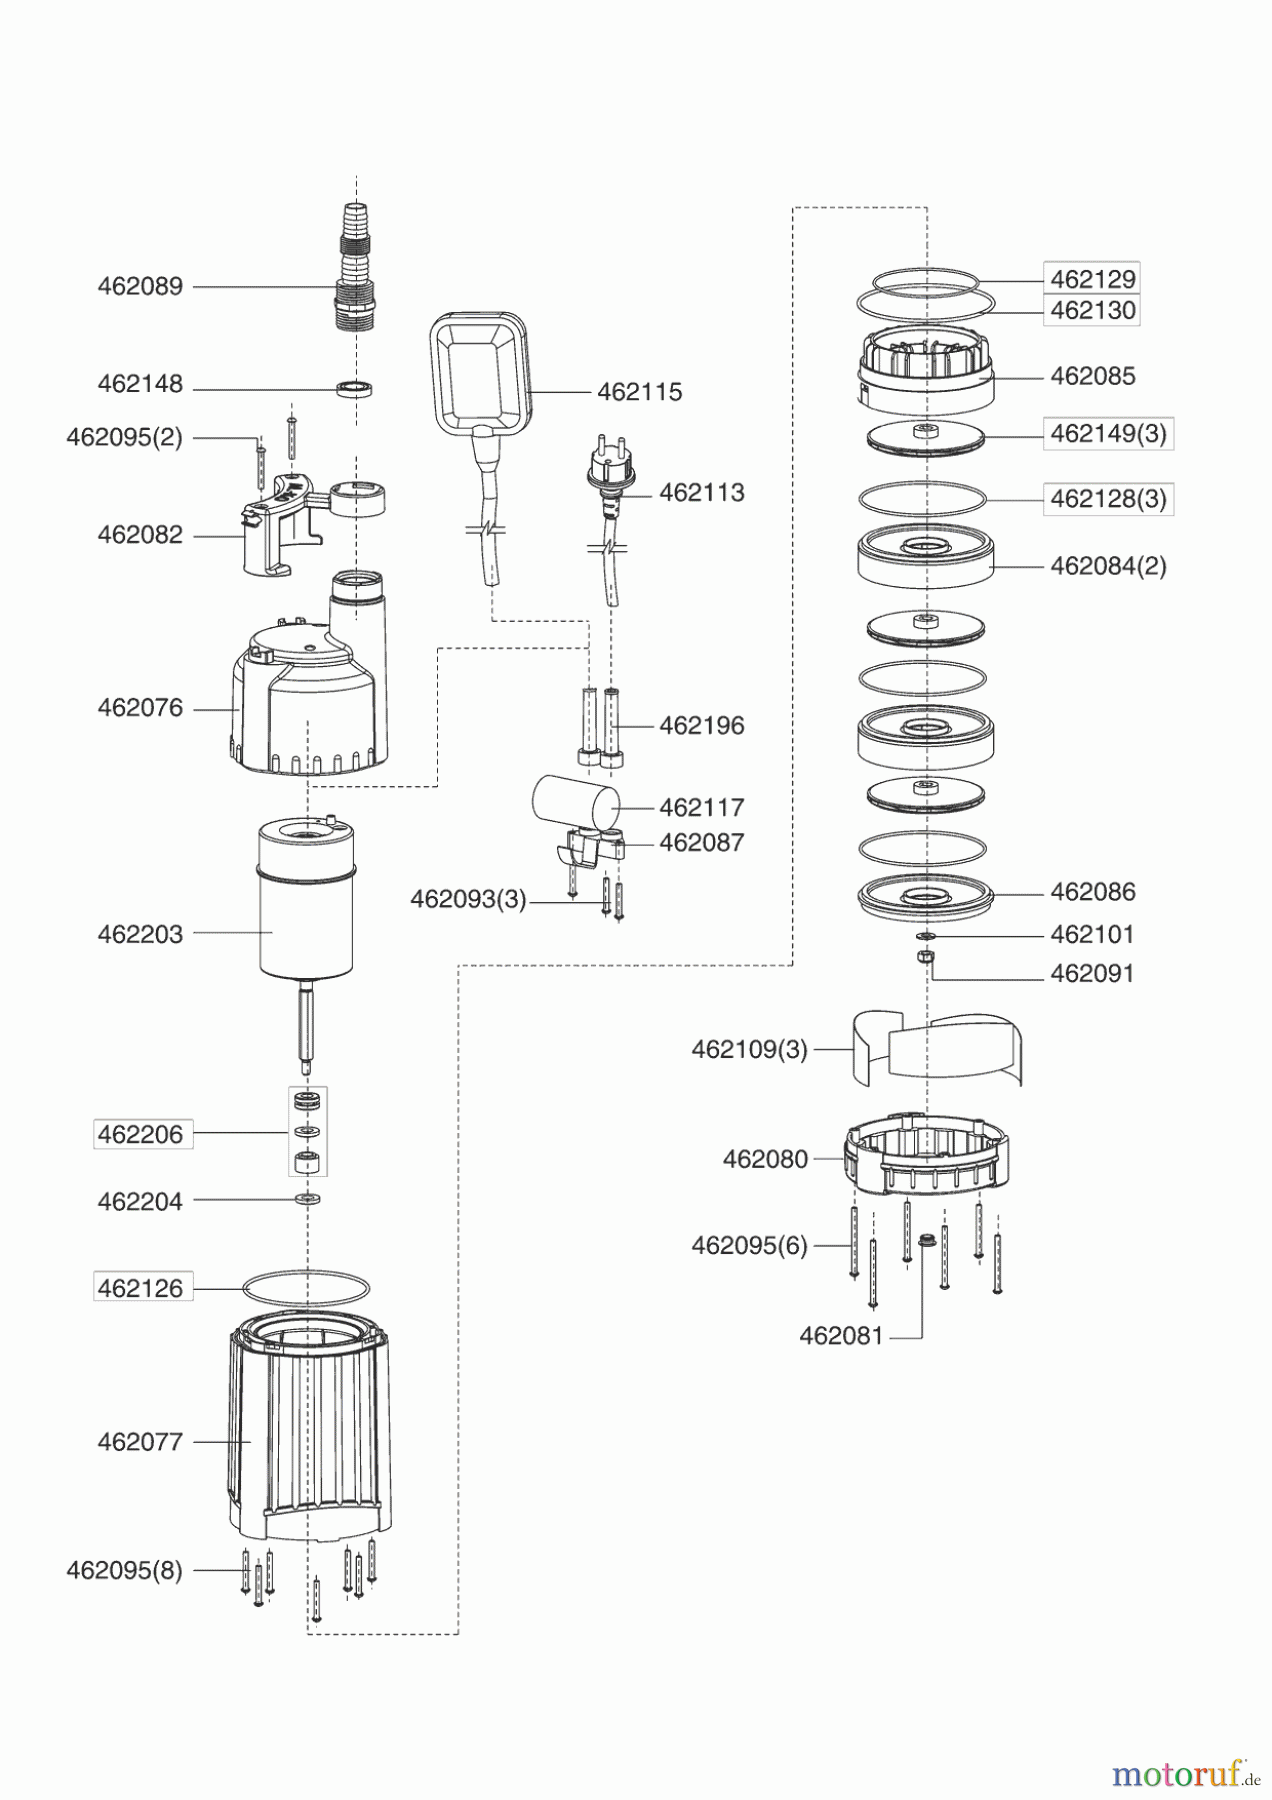  AL-KO Wassertechnik Tauchdruckpumpen TDS 1001-3 Seite 1